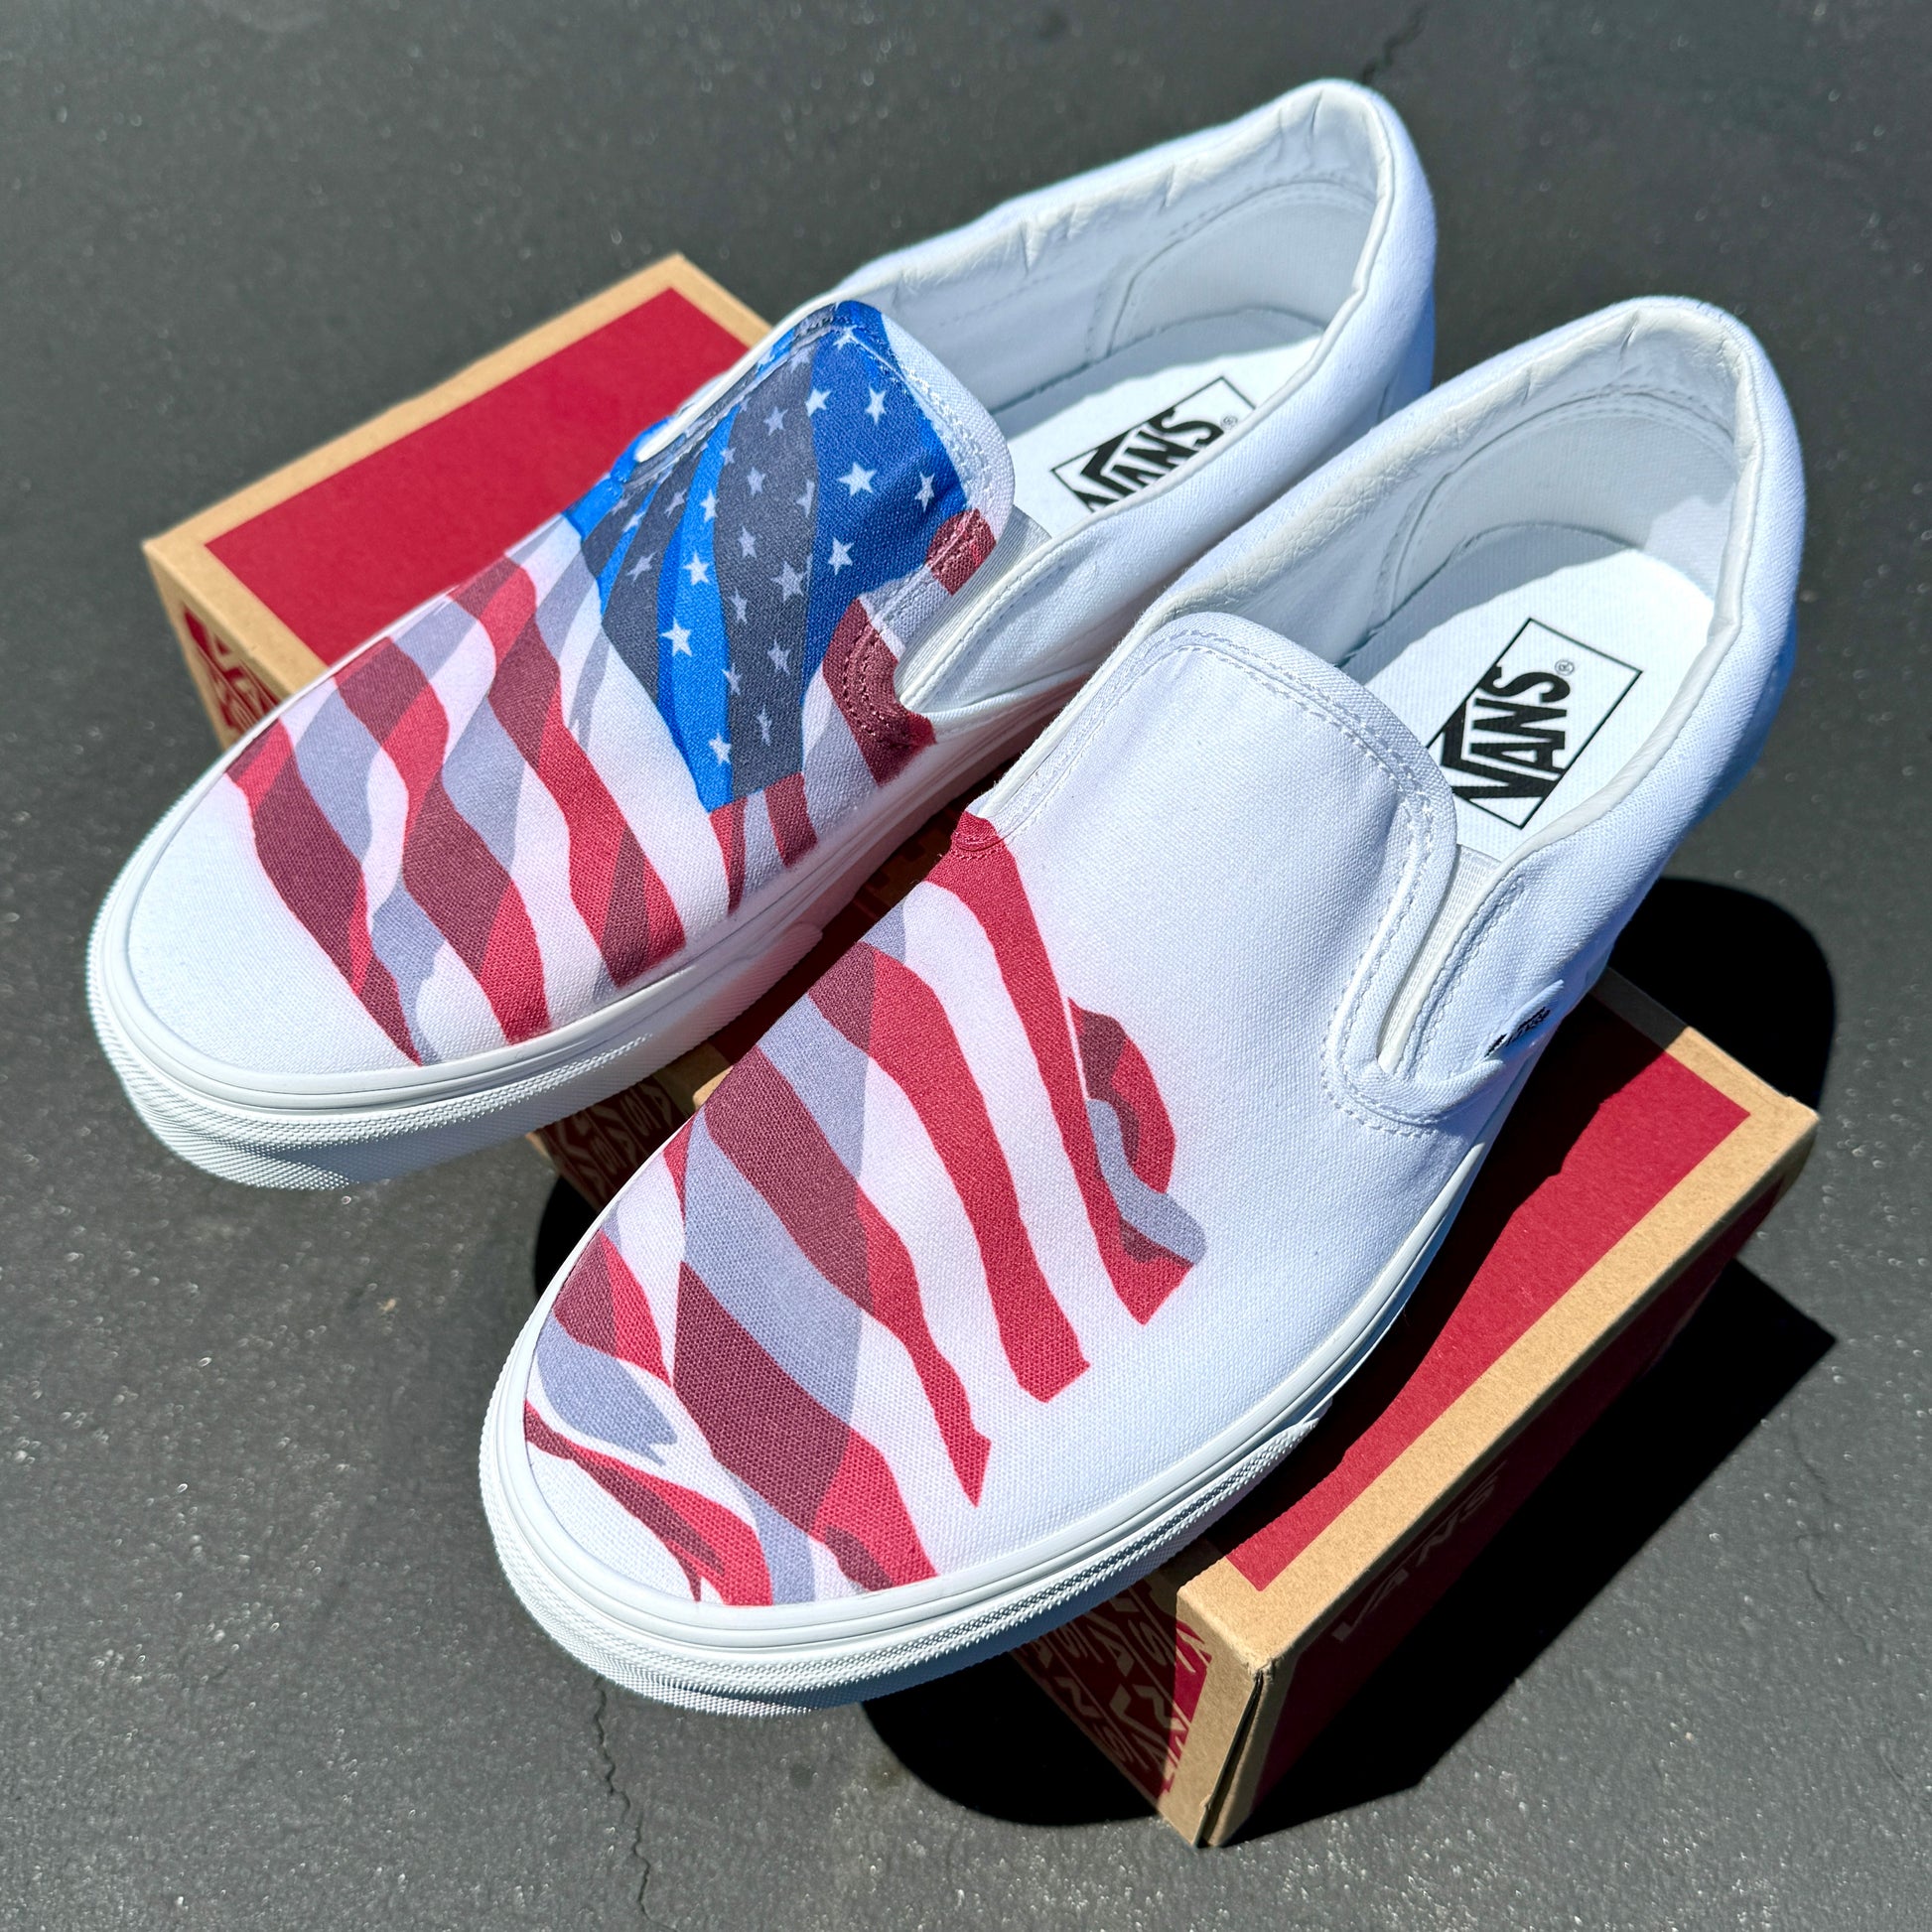 American flag slip on vans shoes for women and men